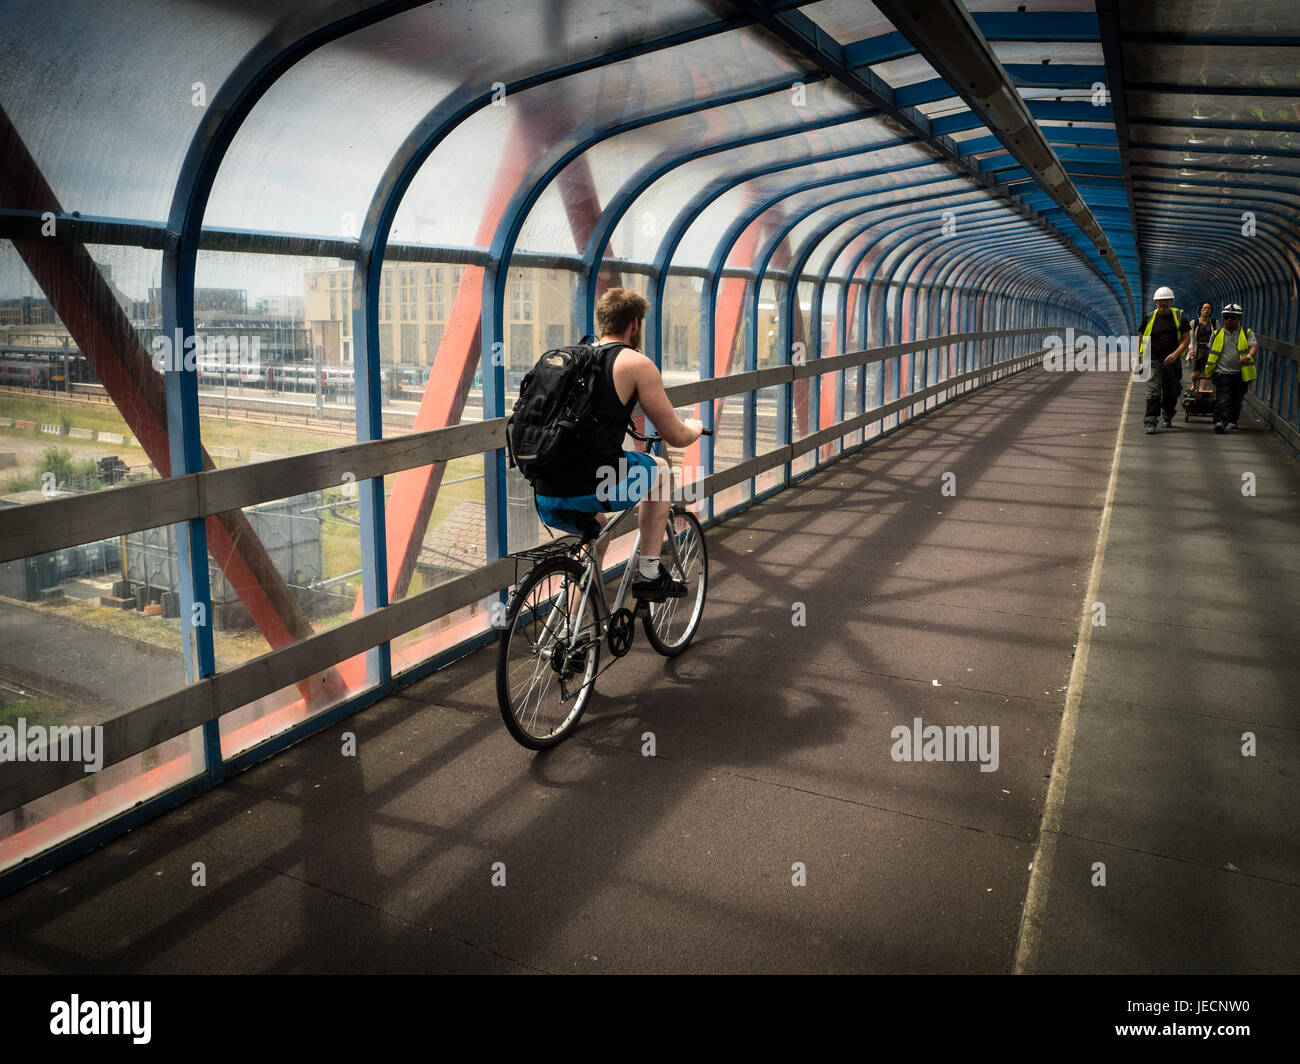 Radfahren Brücke - Radfahrer Fahrt über die Tony Carter Brücke, eine Rad- und Fußgängerbrücke überqueren die Bahnlinie in Cambridge Großbritannien Stockfoto